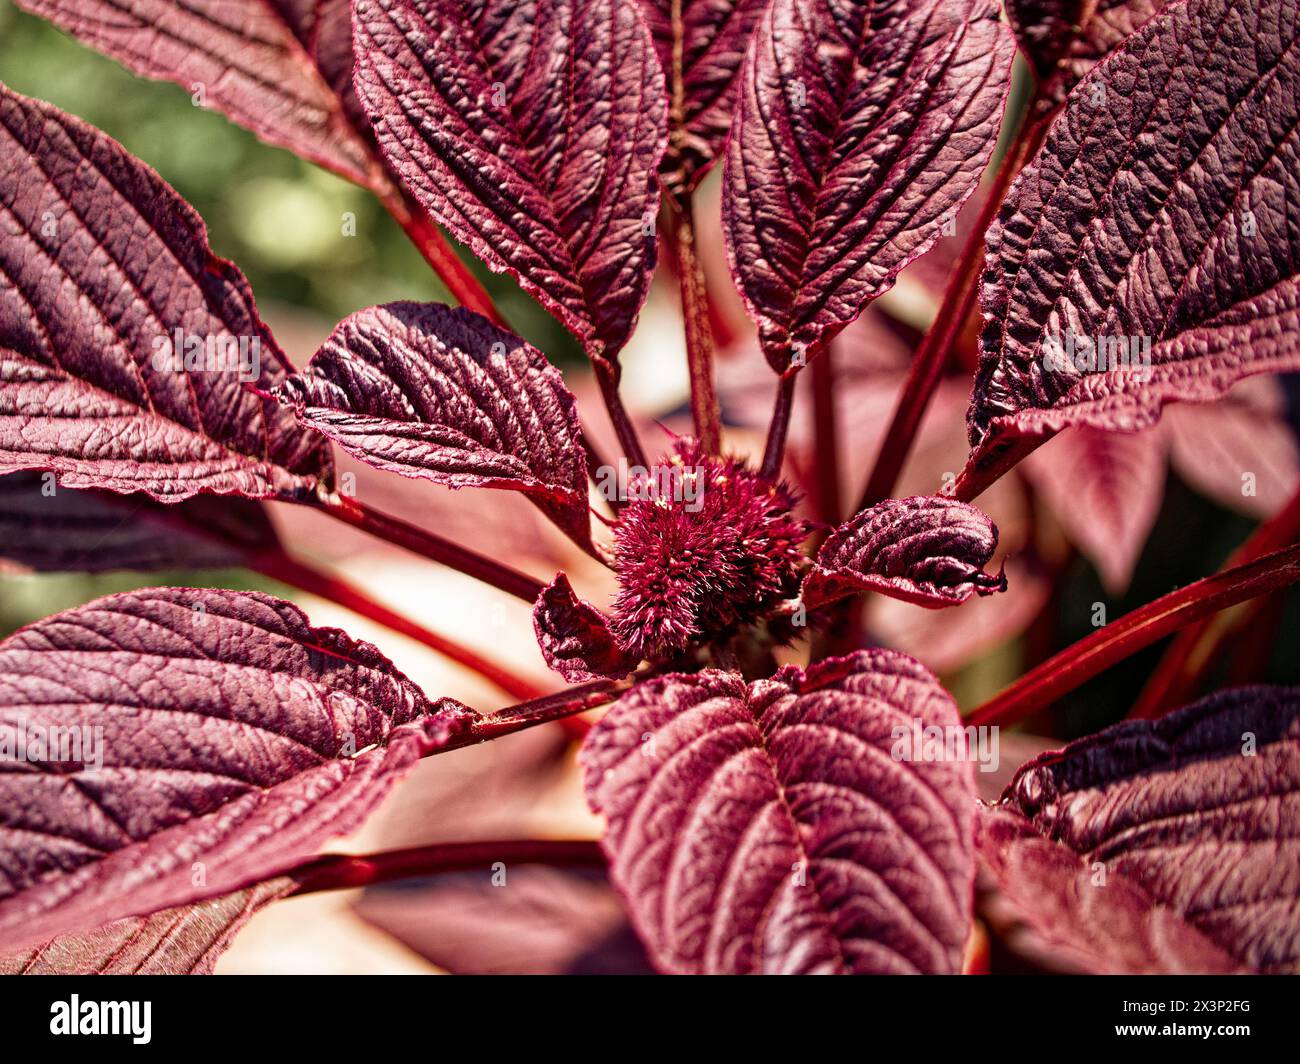 Detailliertes rotes Laub, das Hauptmotiv des Bildes, ideal für naturinspirierte Designs. Stockfoto